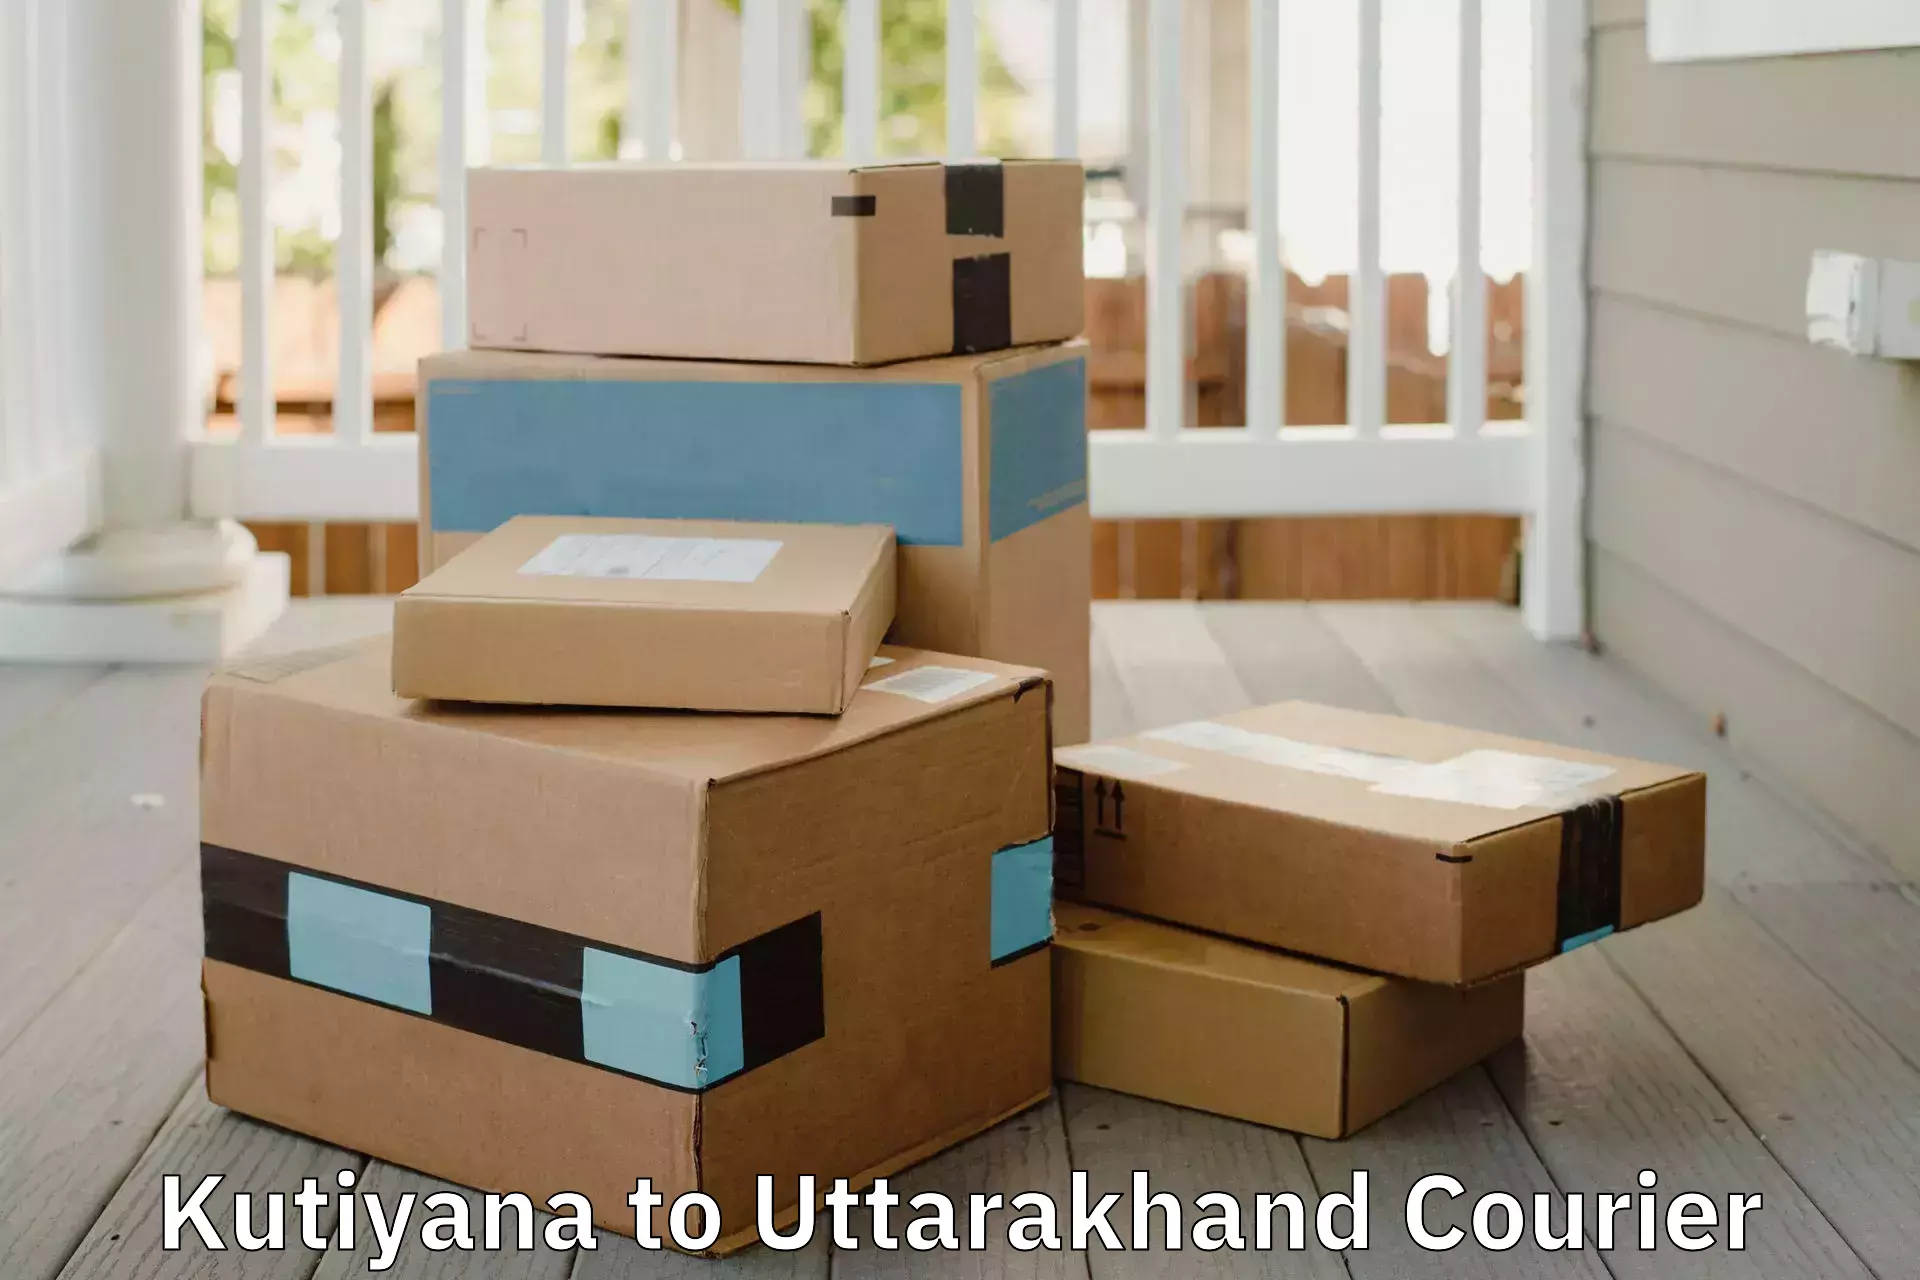 Furniture relocation experts Kutiyana to Uttarakhand